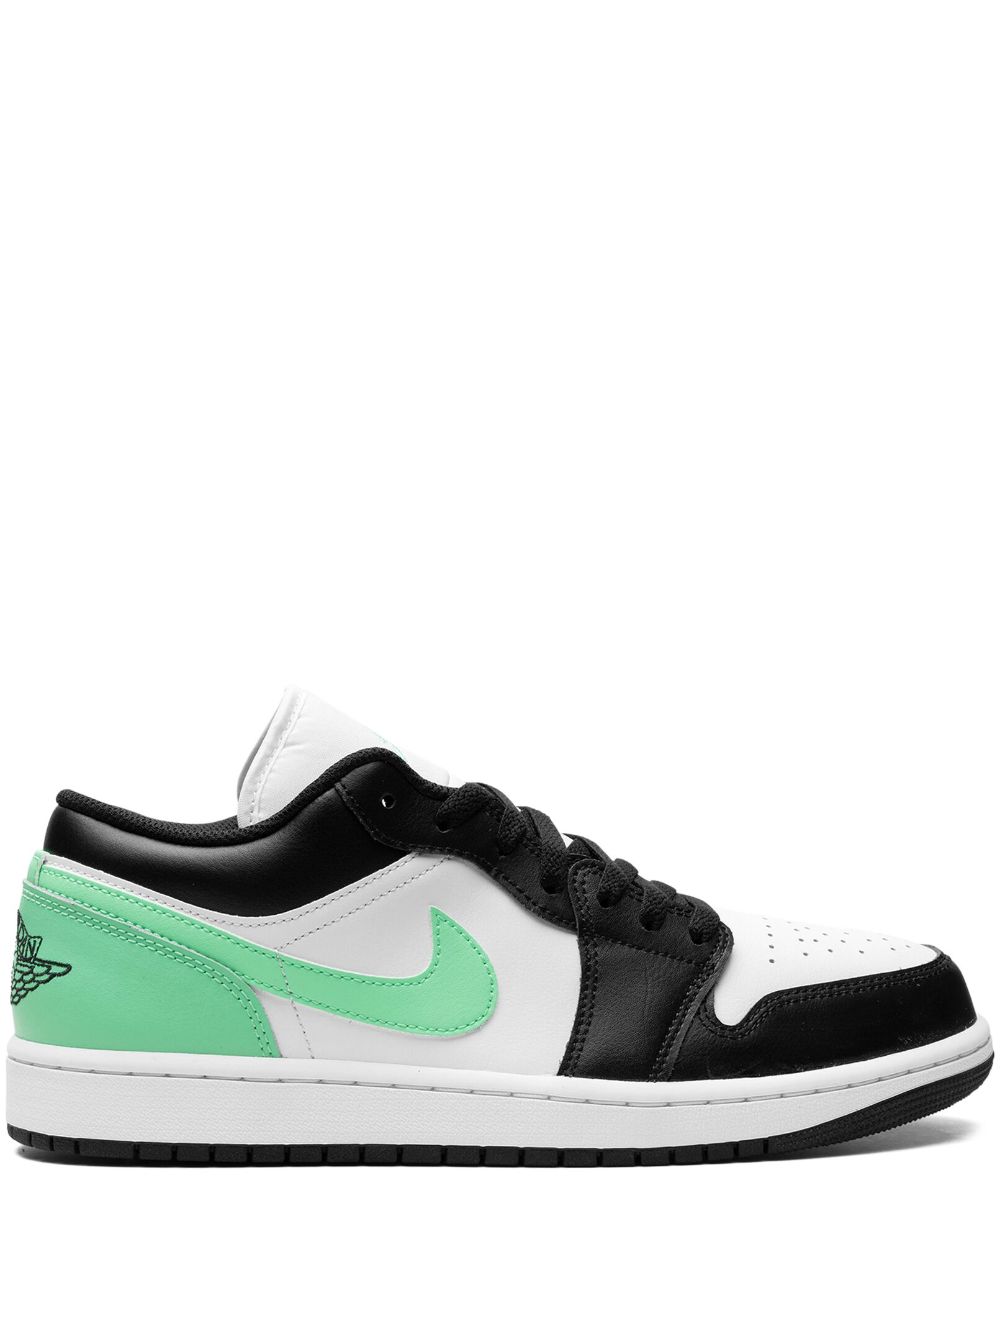 Jordan Air 1 Low "Green Glow" sneakers White